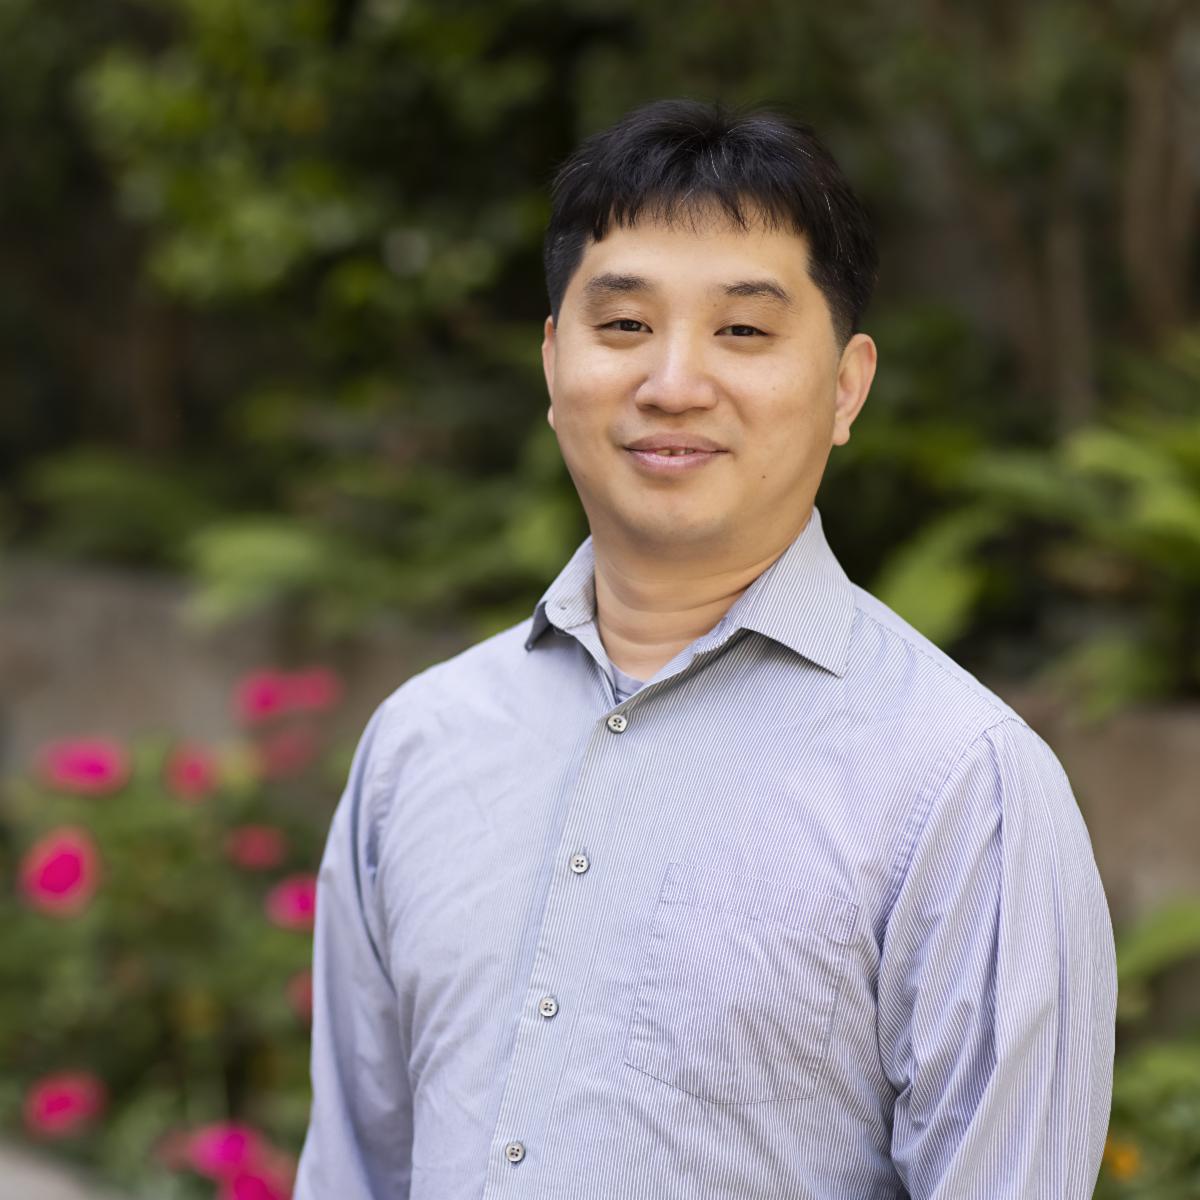 Kang Wang, MD, PhD